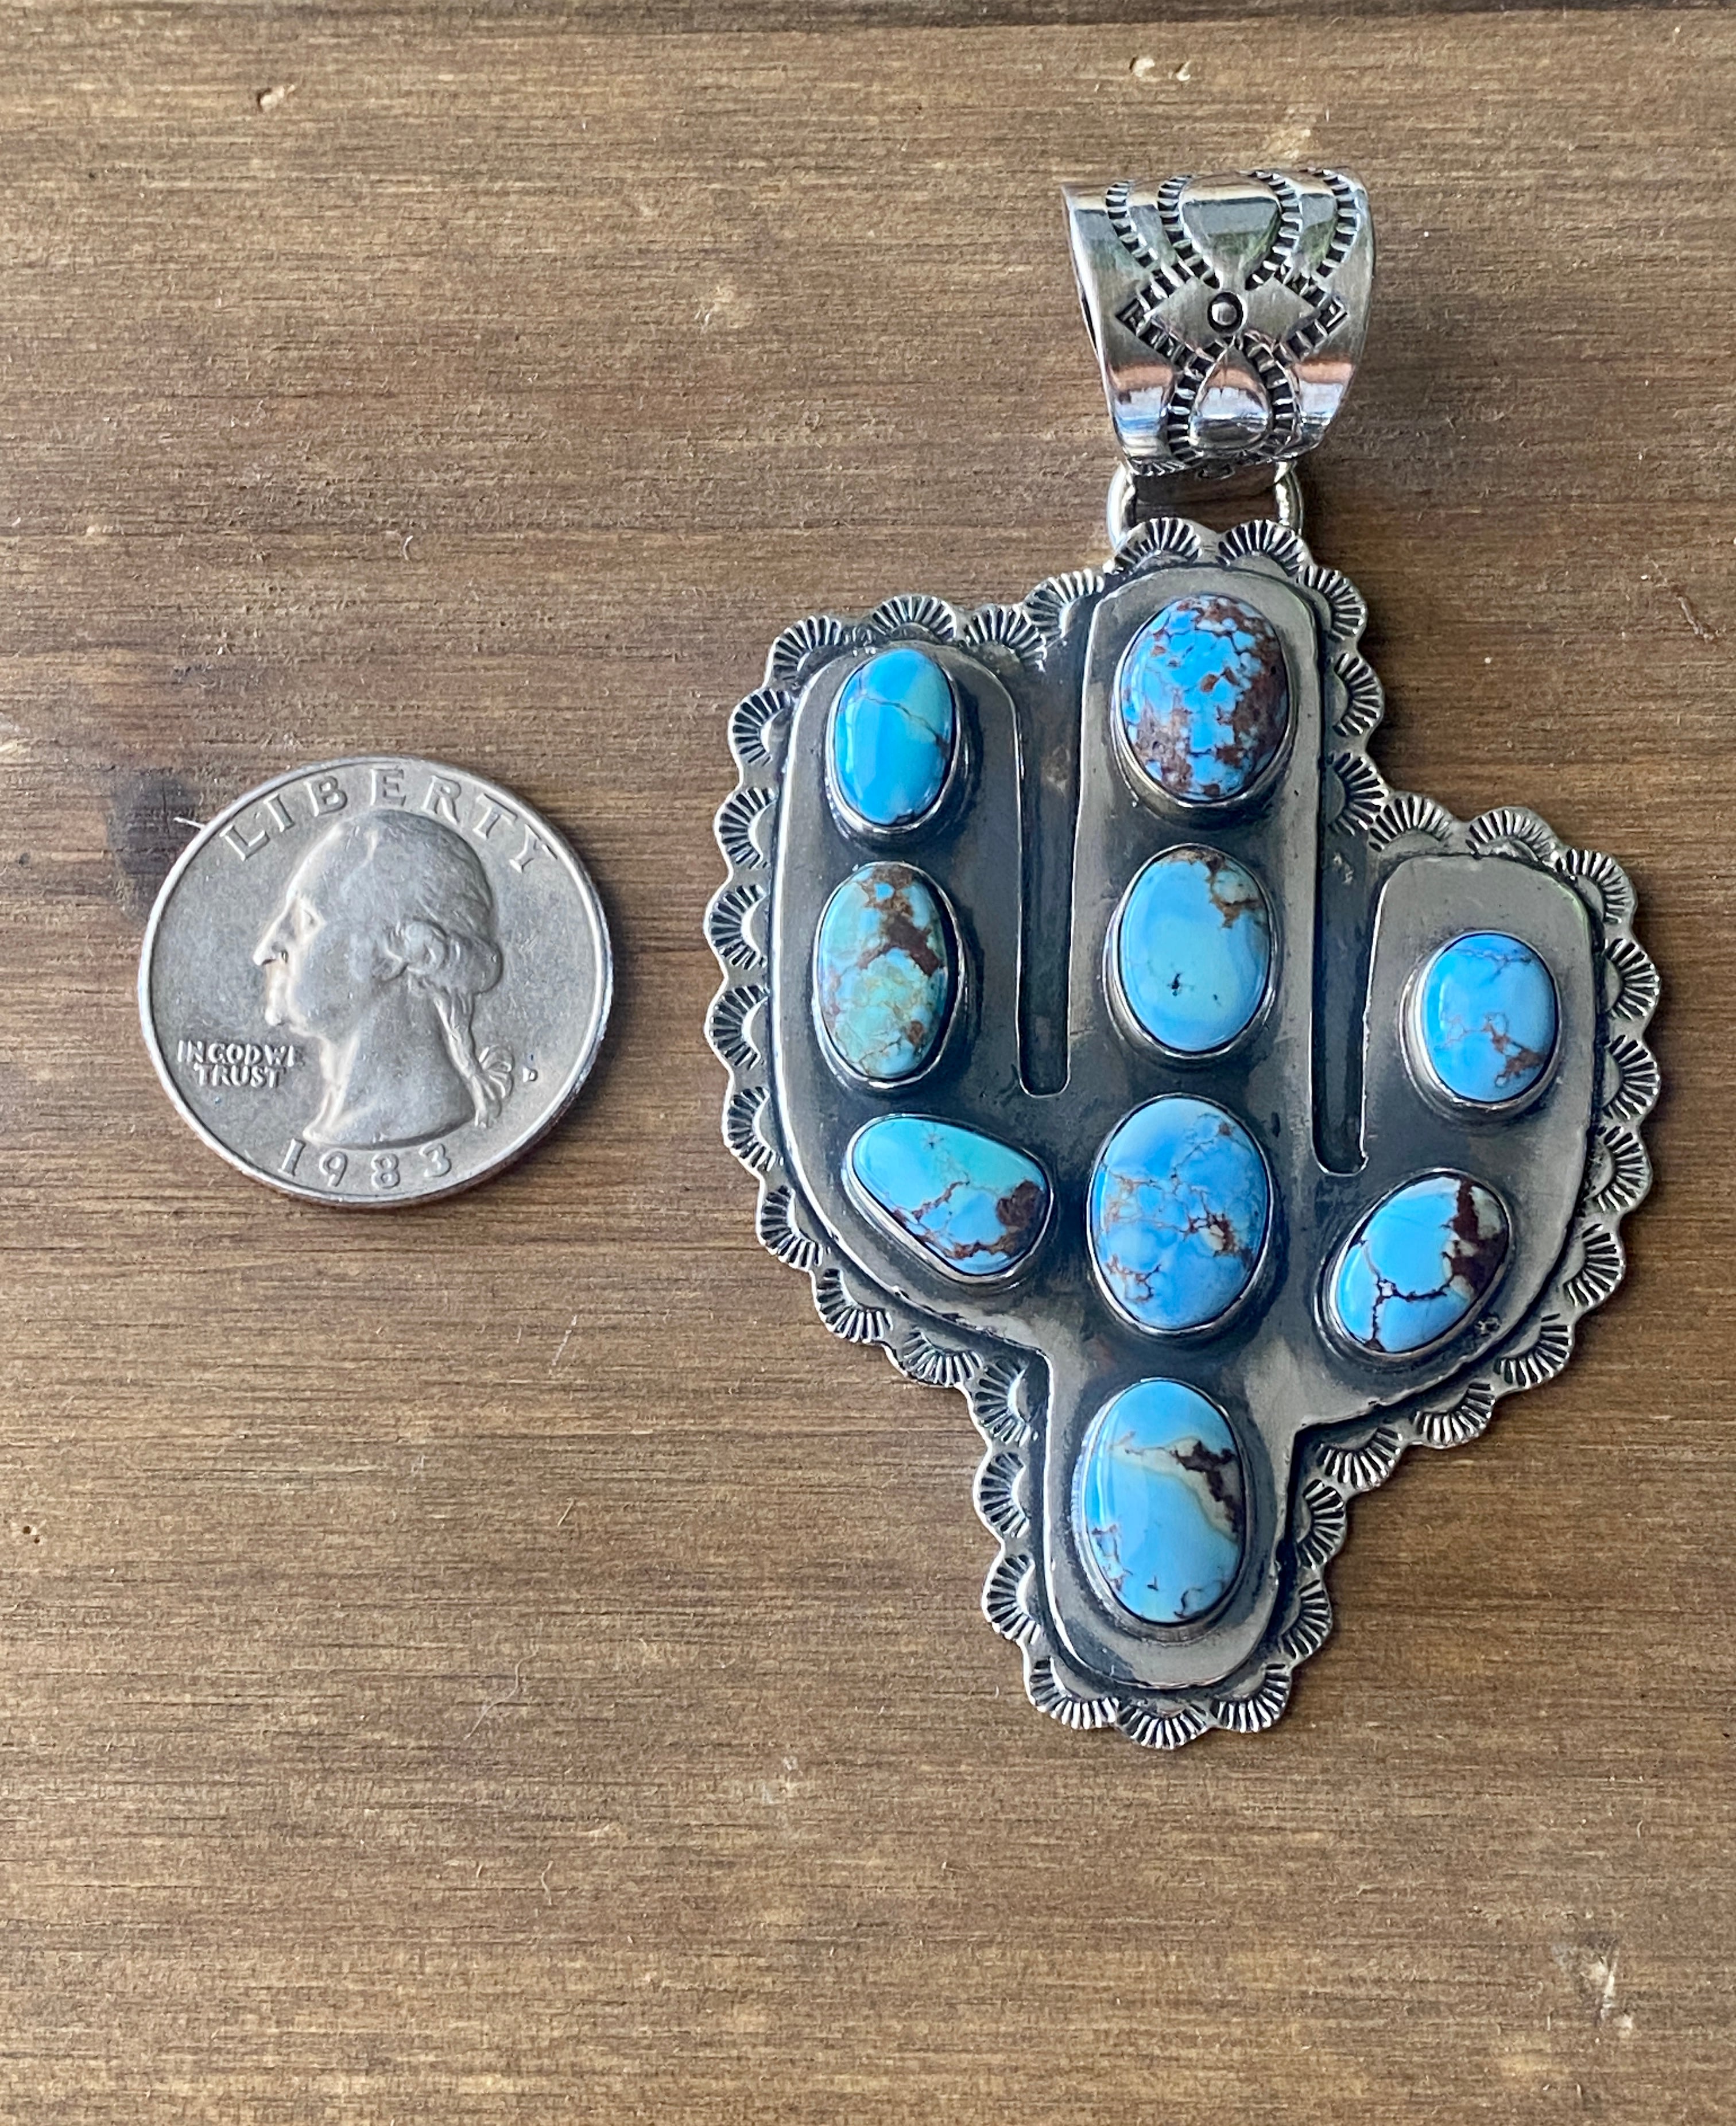 #2 Southwest Handmade Golden Hill’s Turquoise & Sterling Silver Sahuaro Pendant